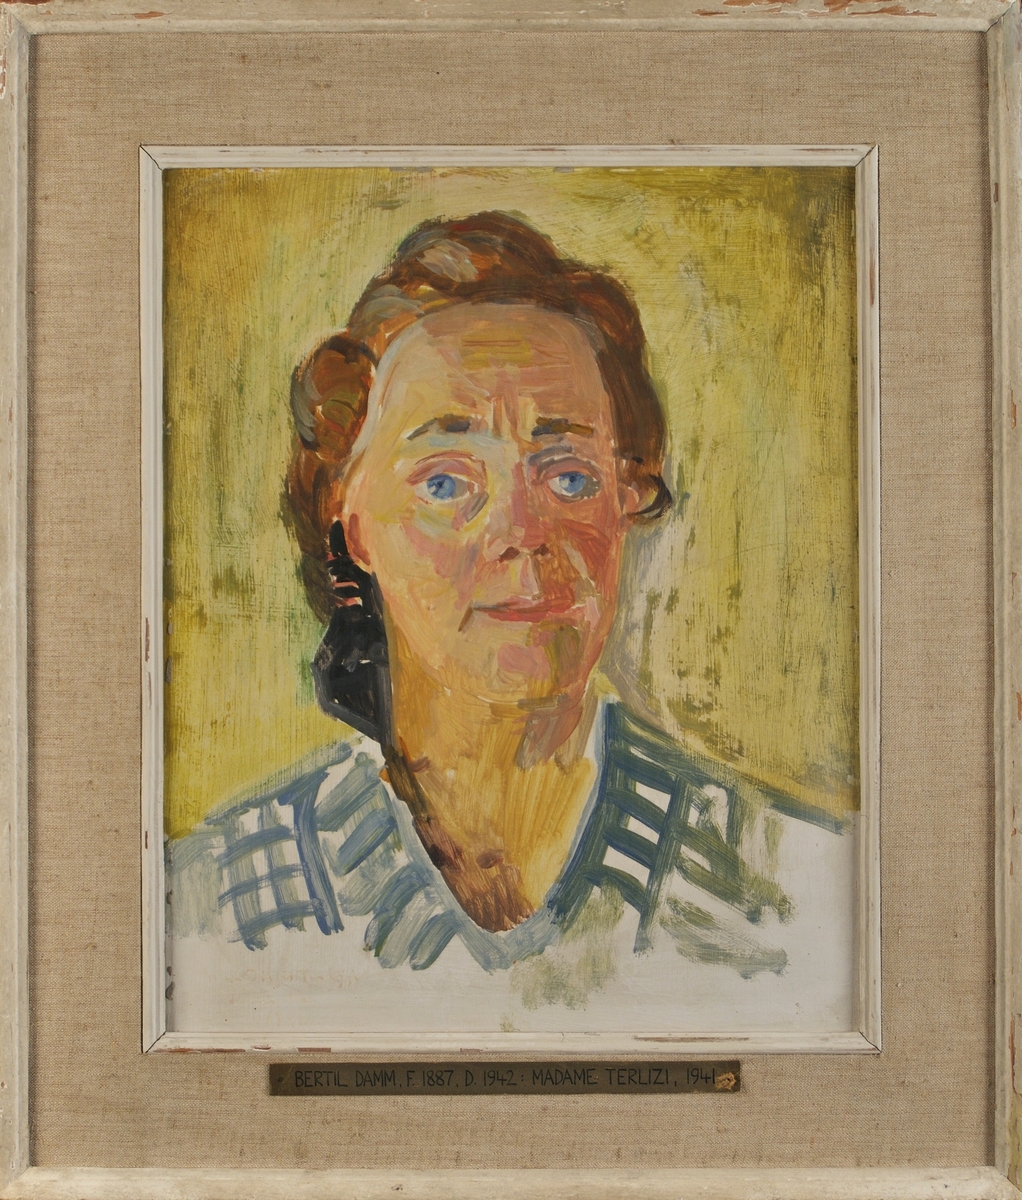 Porträtt i olja av sångpedagog Madame Terlizi, 1941, av Bertil Damm.